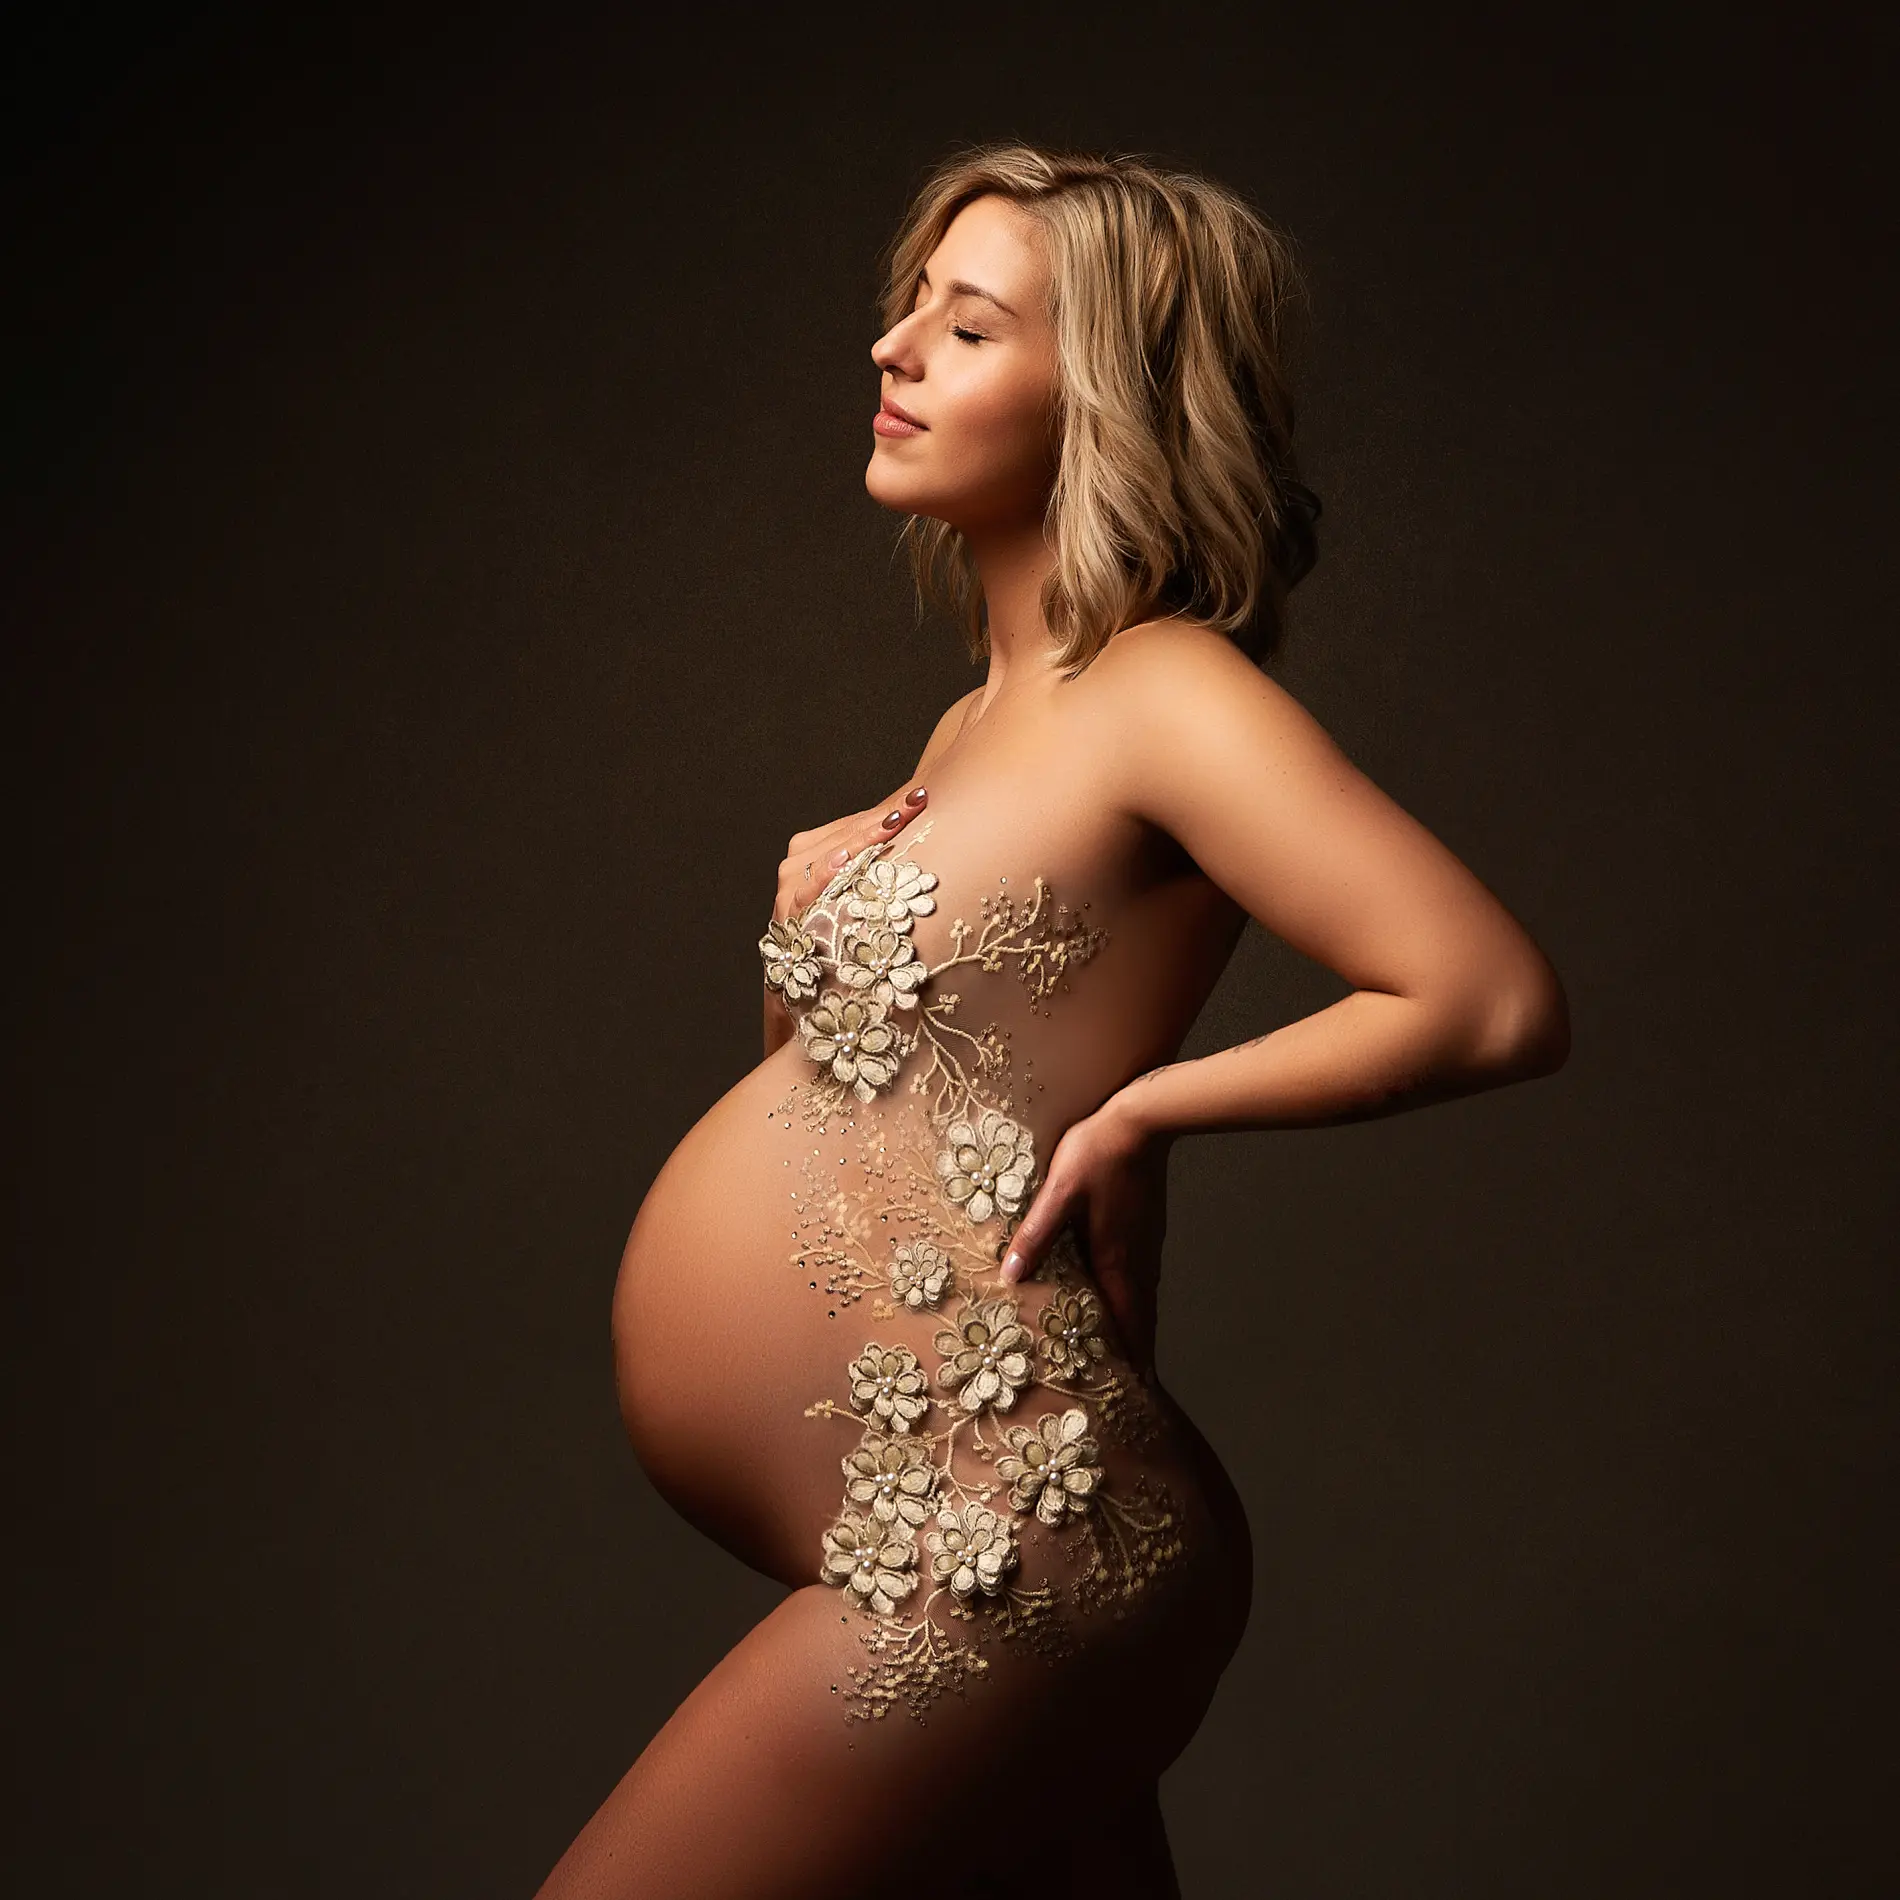 Zwangerschap Fotoshoot - Unieke Belly Sessies bij Christa Nerinckx Fotografie